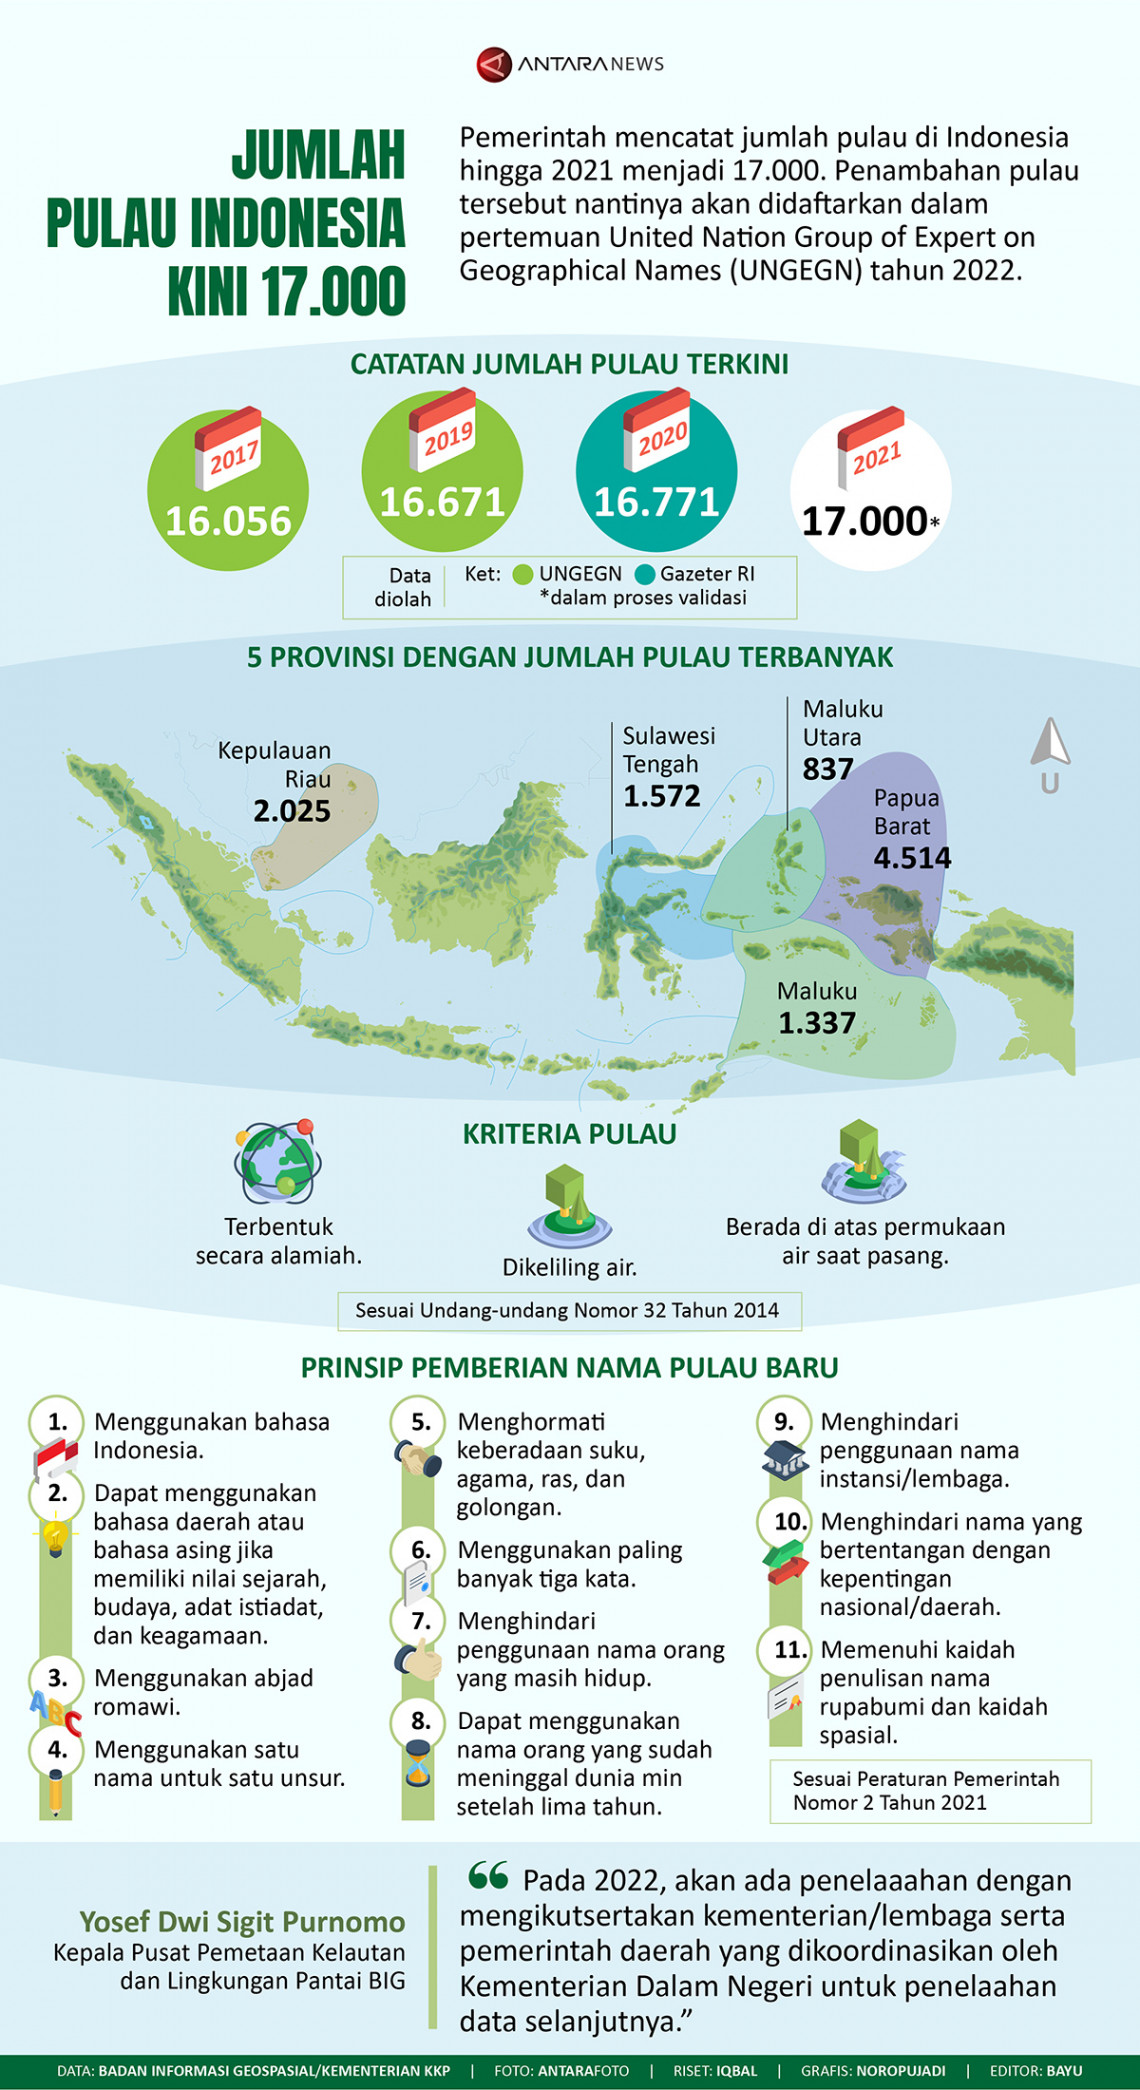 Jumlah pulau Indonesia kini 17.000